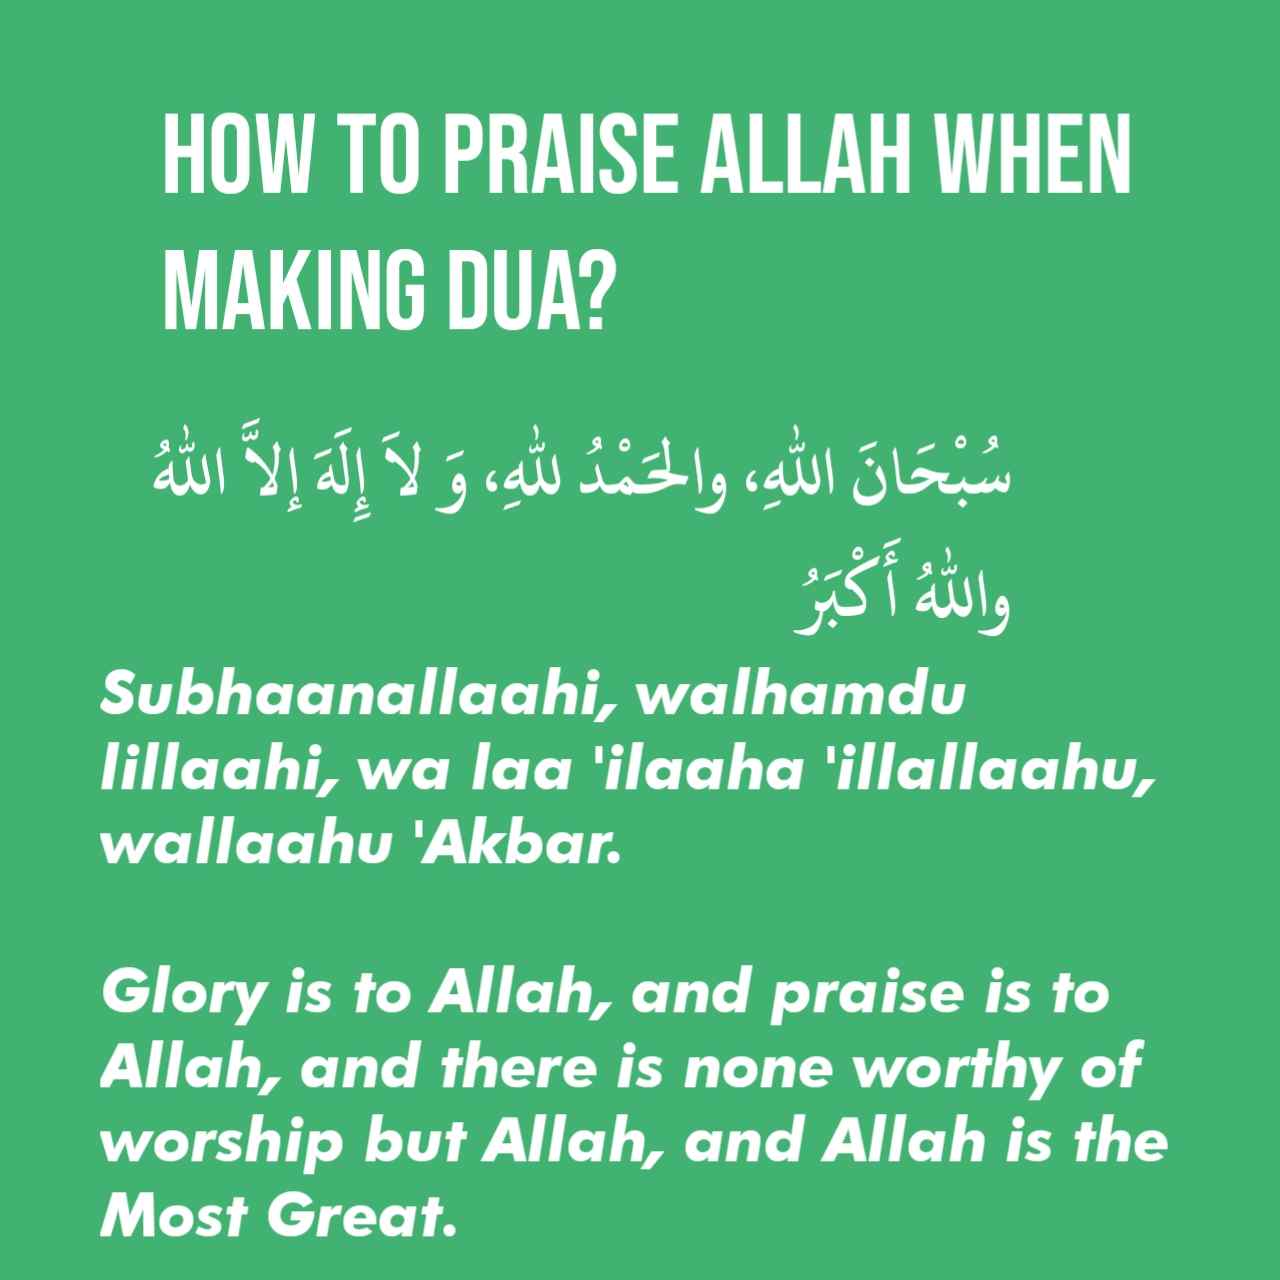 How To Praise Allah When Making Dua?